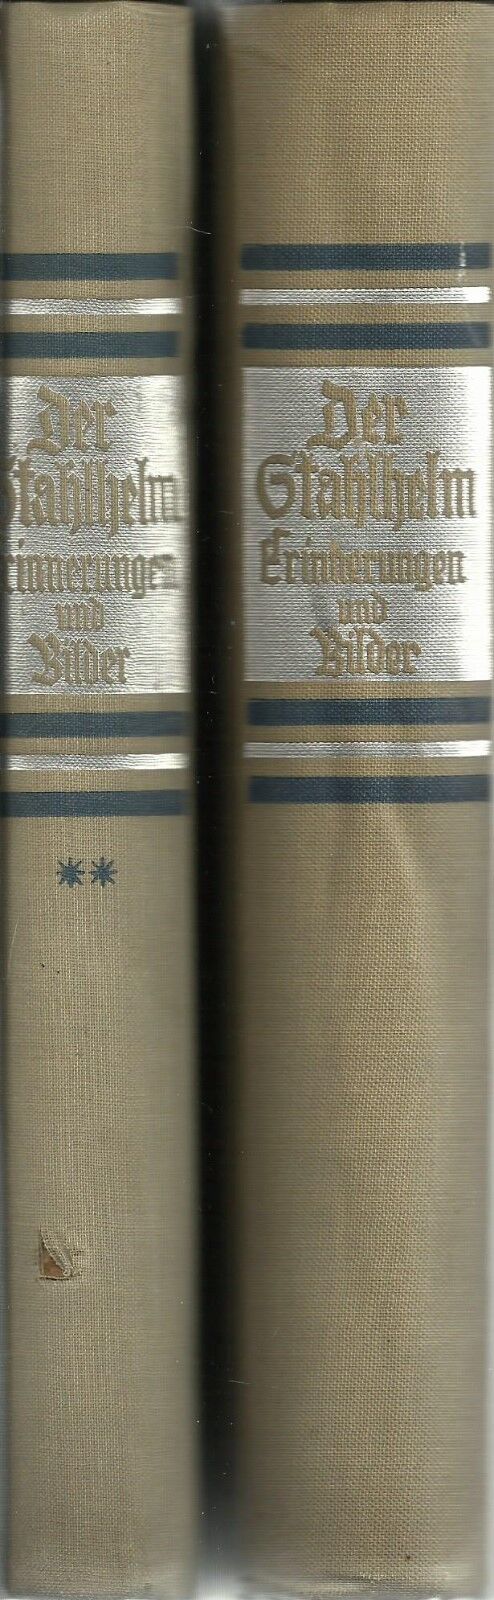 Der Stahlhelm: Erinnerungen Und Bilder By Fritz Seldte 2 Volumes